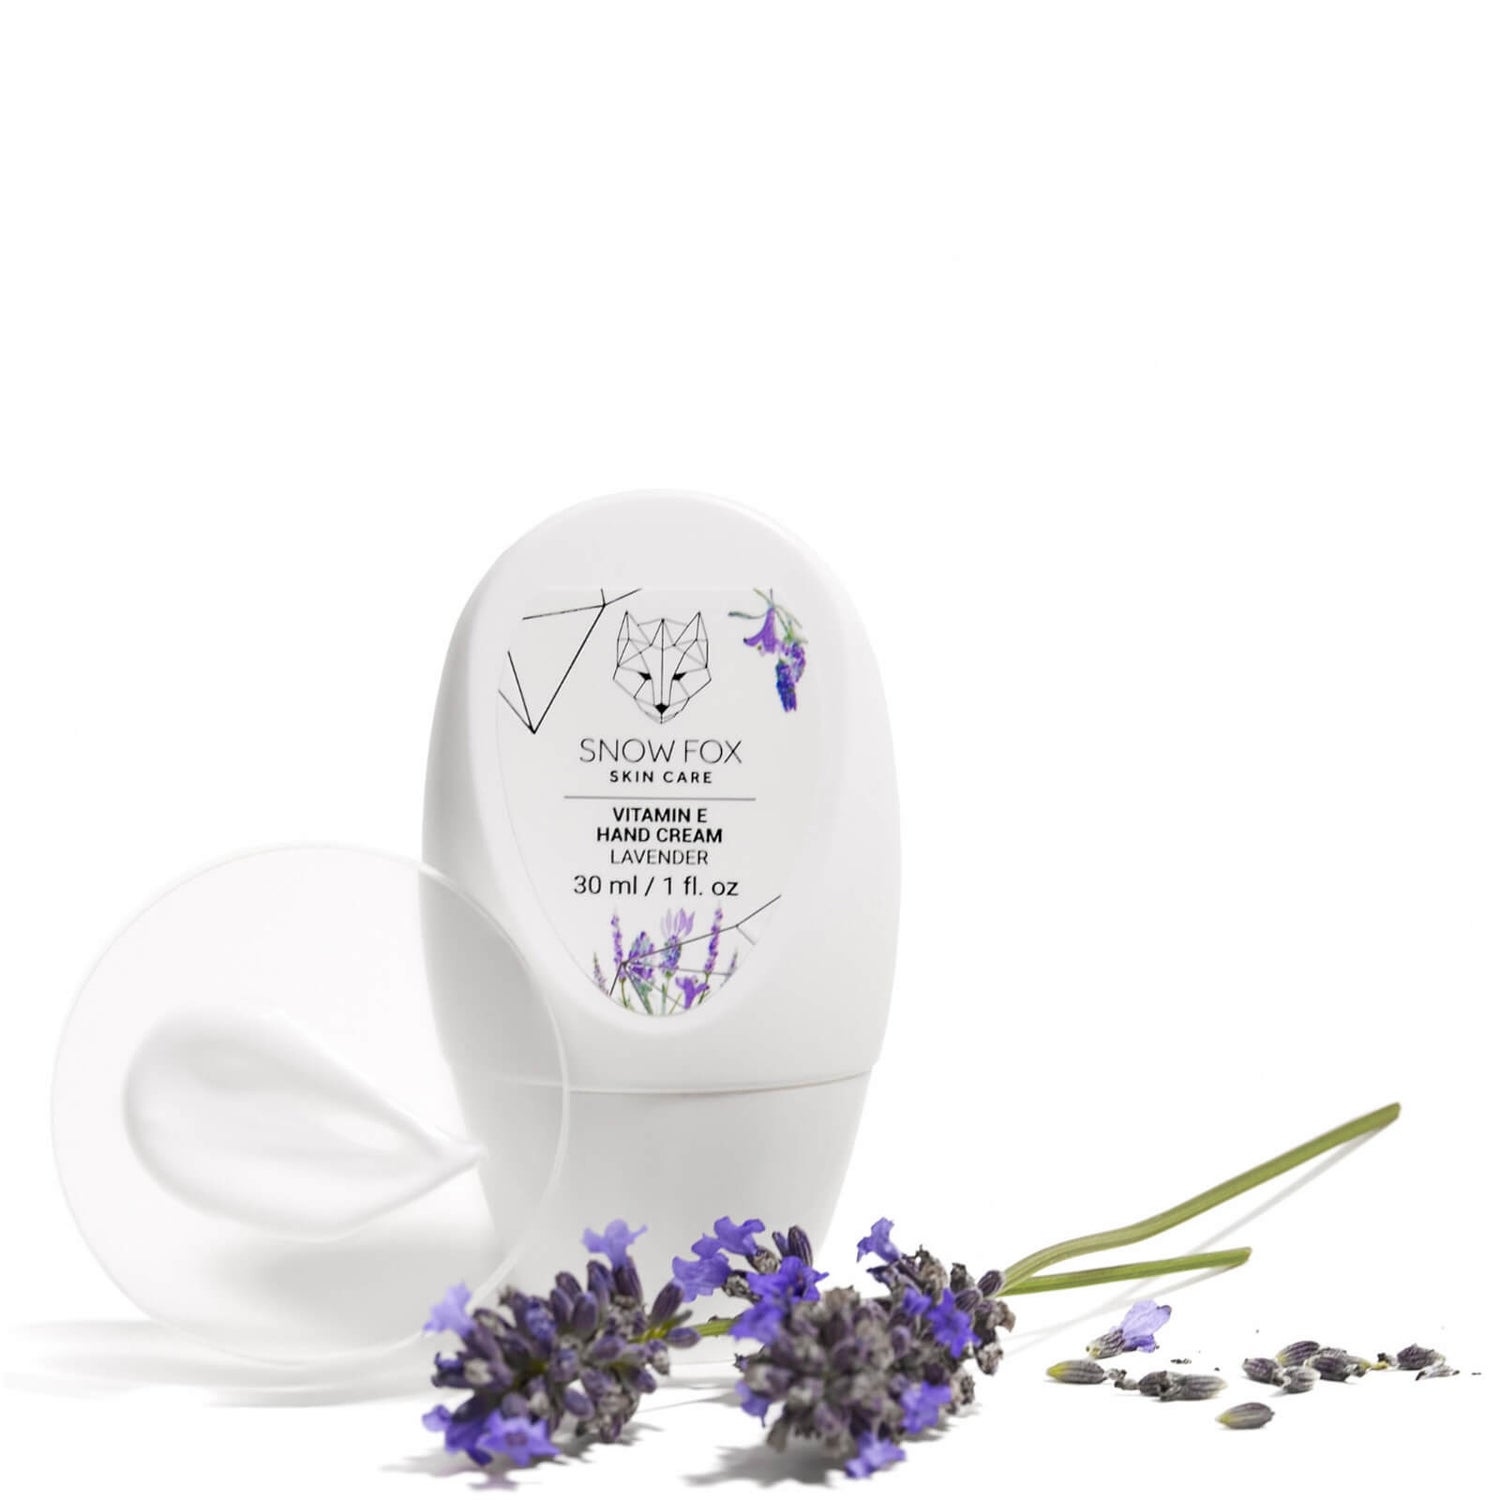 Snow Fox Skincare Vitamin E Hand Cream 1 oz - Lavender